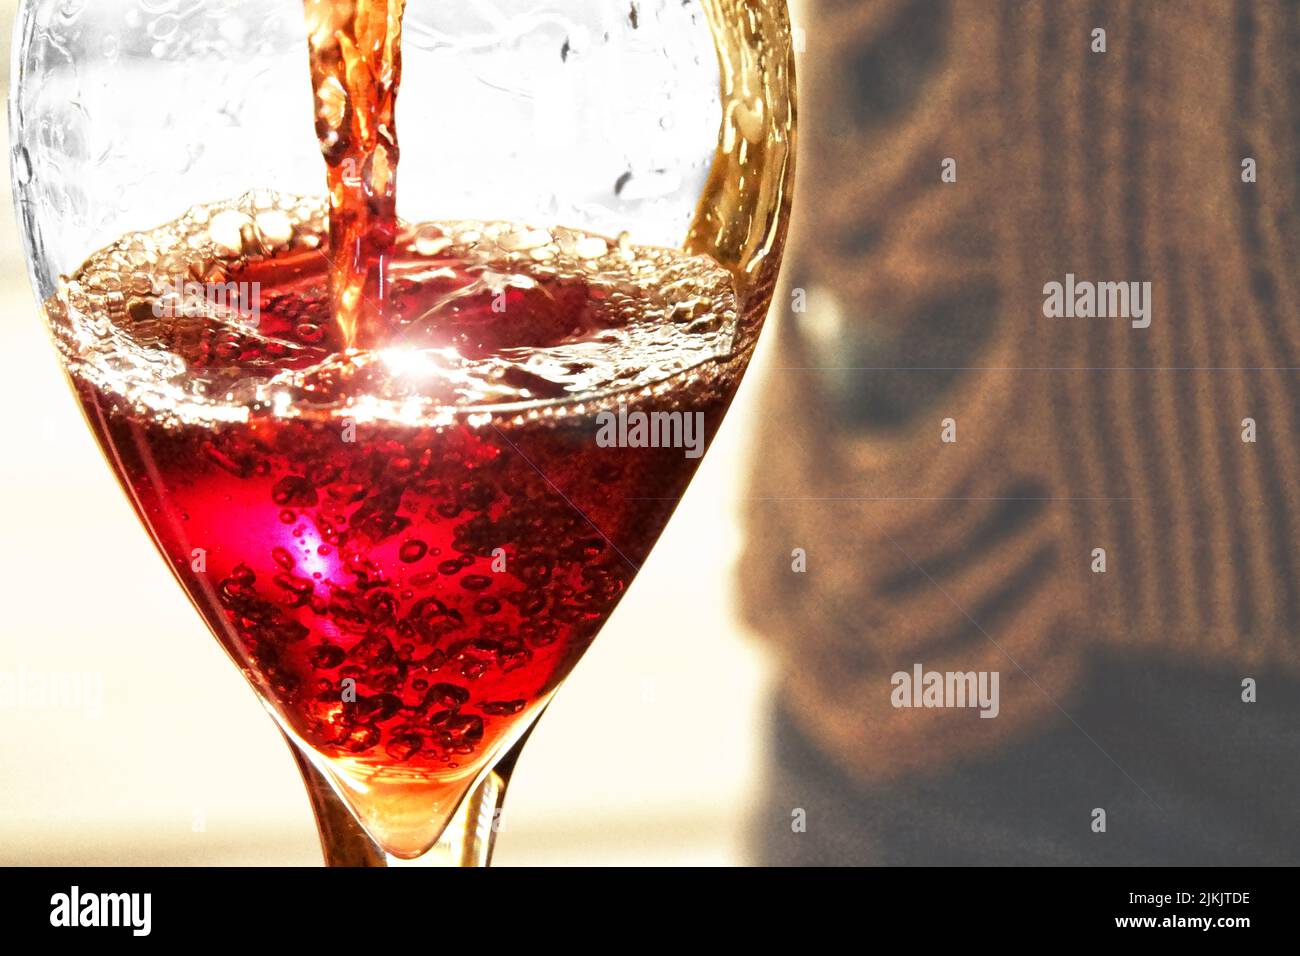 Eine Nahaufnahme von Rotwein, der in das Glas gegossen wird Stockfoto